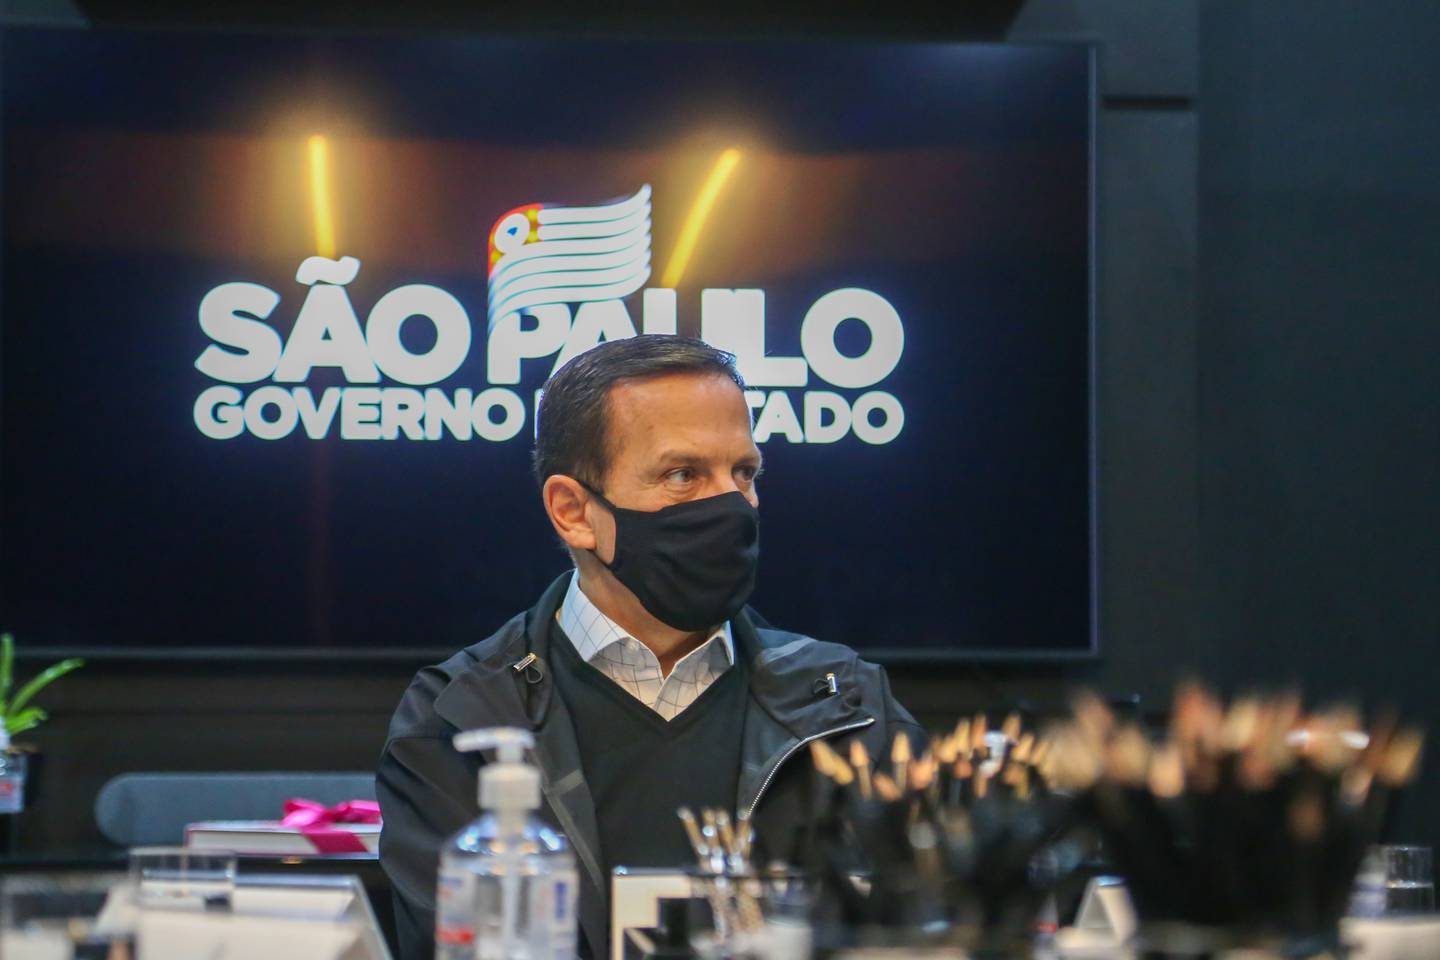 Estado de São Paulo coordenou uma série de eventos teste, como a feira Expo Retomada em Santos em 21 e 22 de julho